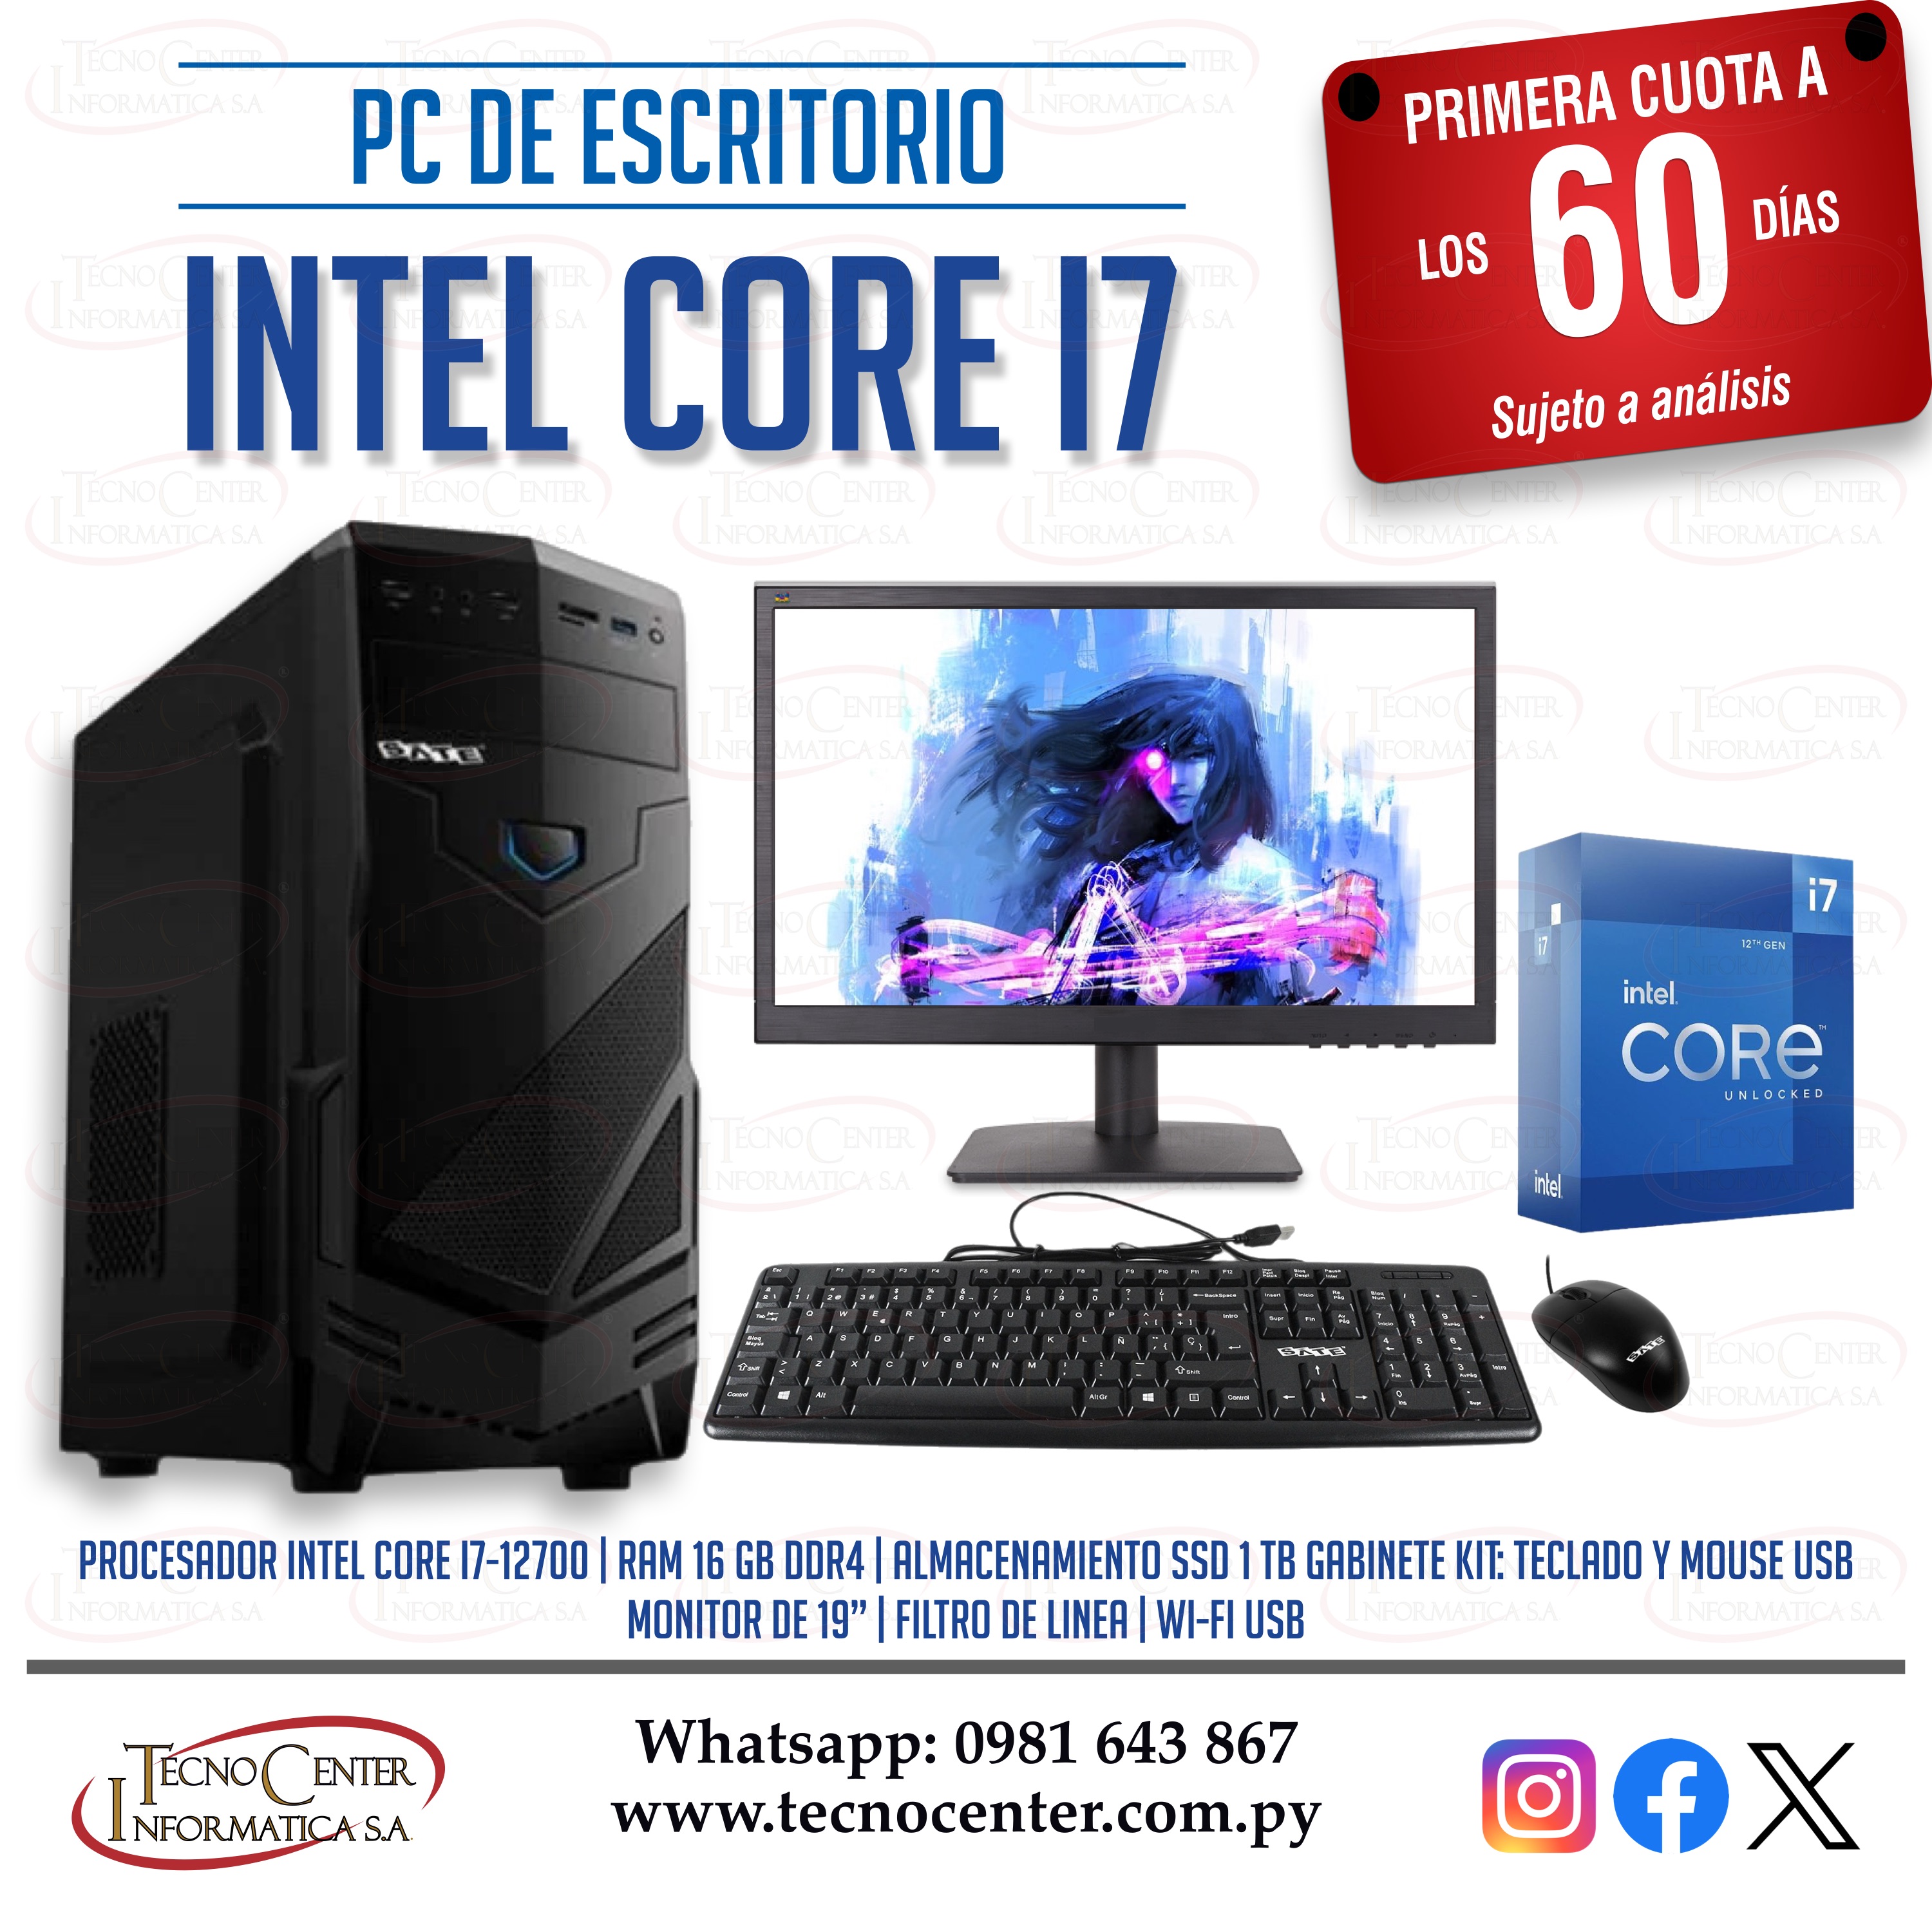 PC de Escritorio Intel Core i7 SSD 1 TB